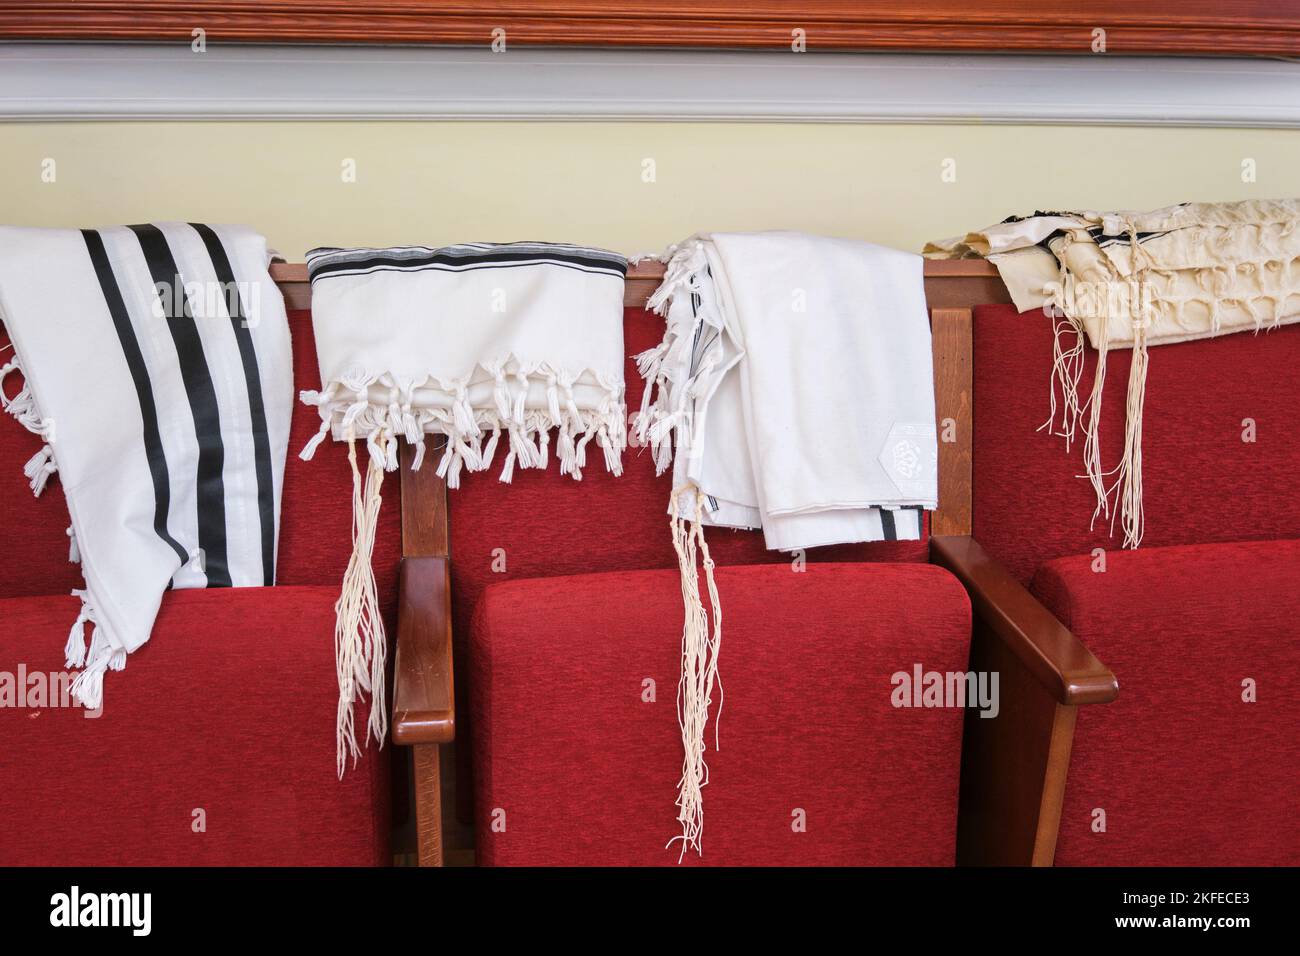 Quelques tallis, châles de prière tallite, pendent à l'arrière des chaises rouges à la synagogue blanche en bois Beit Rachel W Astanie. À Astana, Nur Sultan, Kazakh Banque D'Images